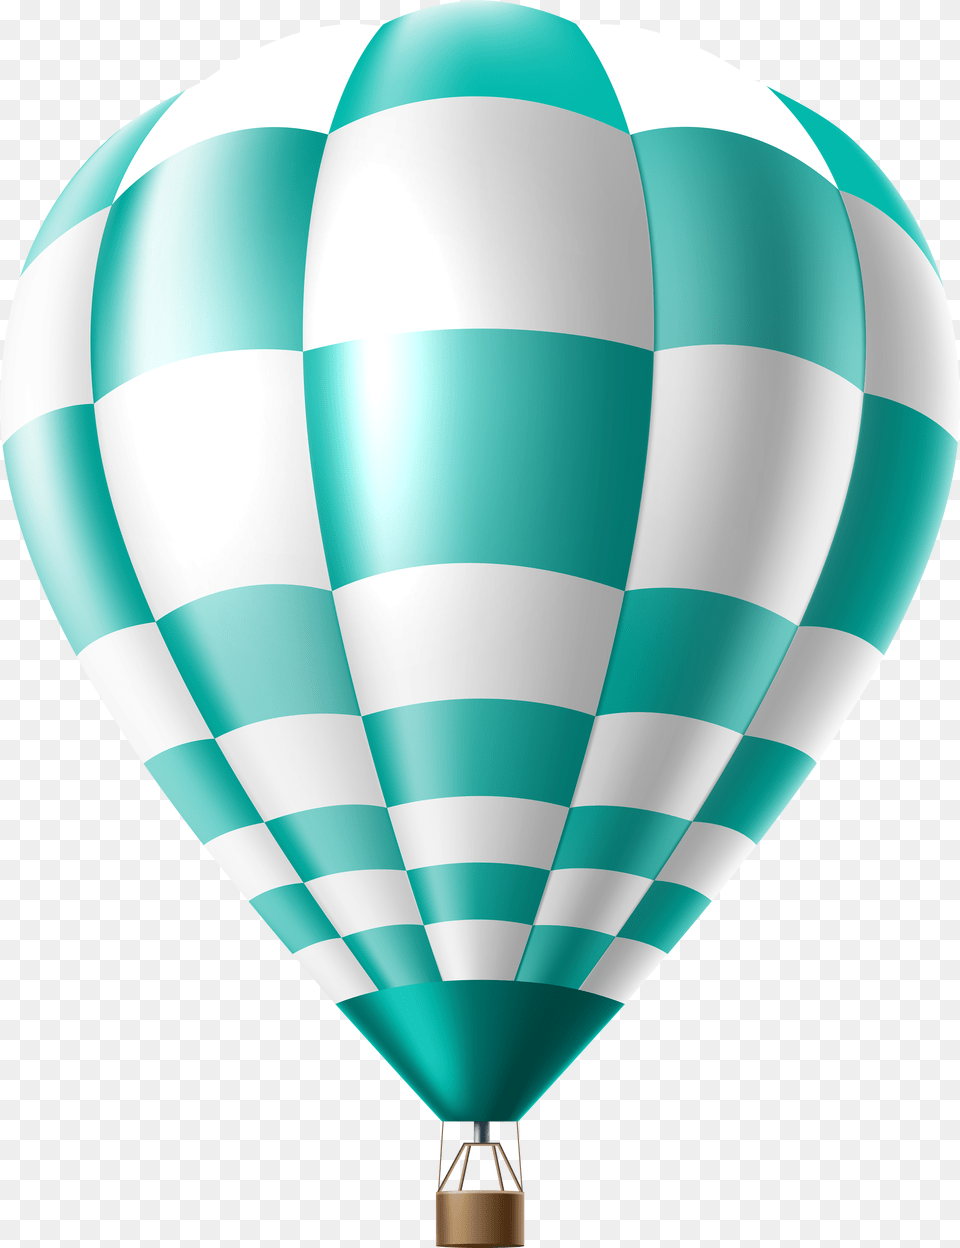 Hot Air Balloon Clipart Transparent Hot Air Balloon Clipart Transparent Background Free Png Download